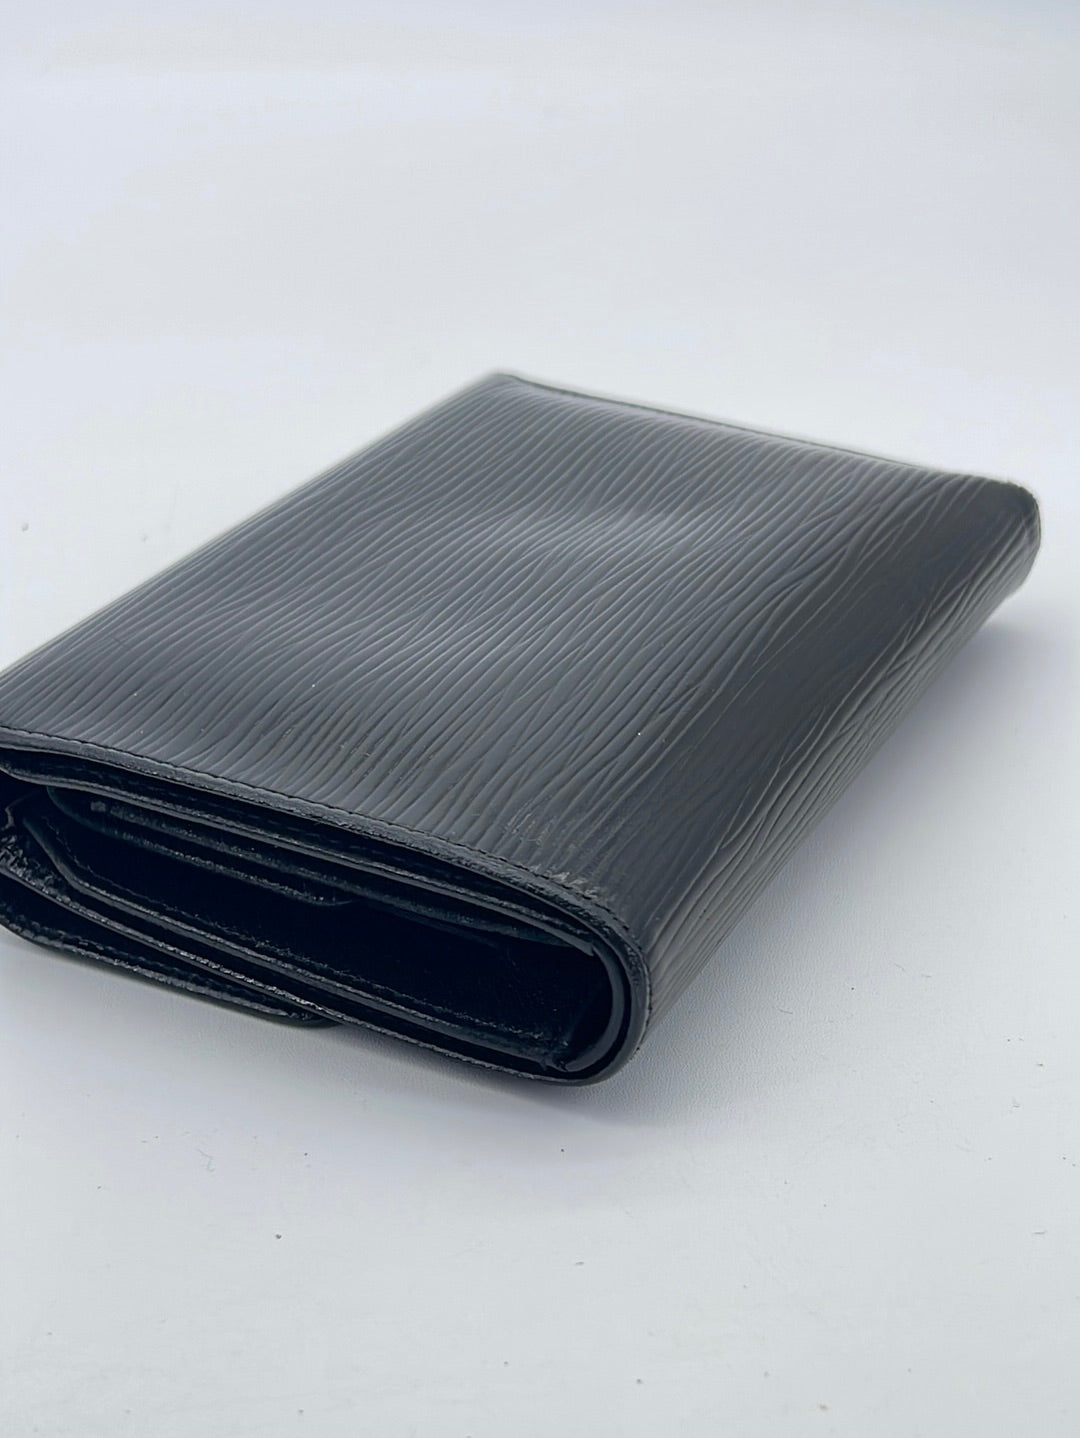 Louis Vuitton Blue Epi leather Brazza Bifold Long Wallet